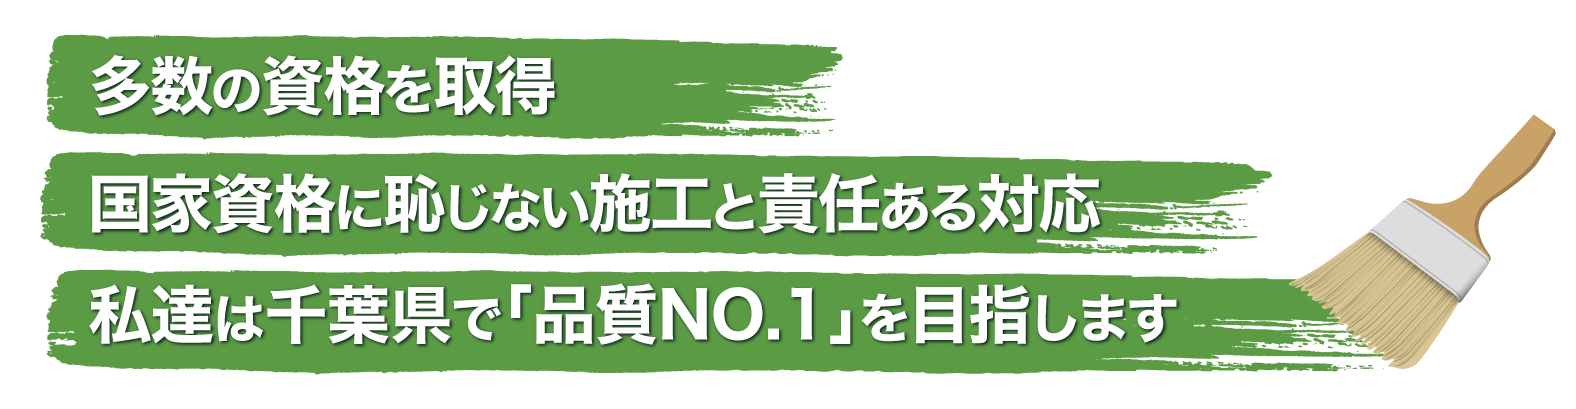 多数の資格を取得・国家資格に恥じない施工と責任ある対応。私達は千葉県で「品質No.1」を目指します